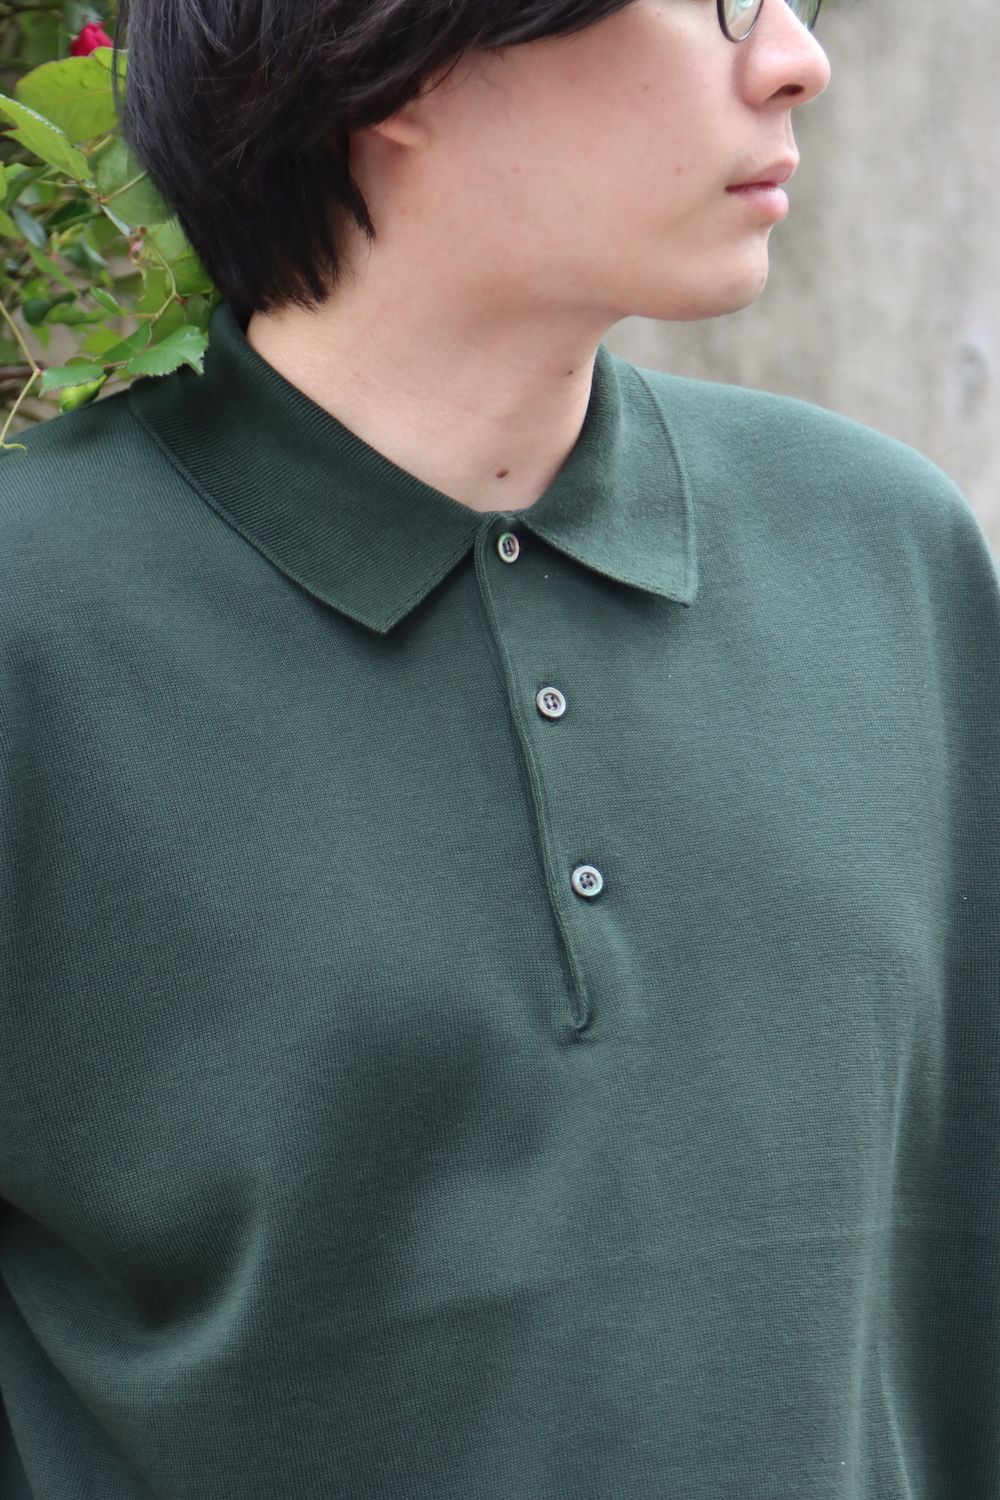 A.PRESSE Cotton Knit S/S Polo Shirts(22SAP-03-05H) style.2022.4.15